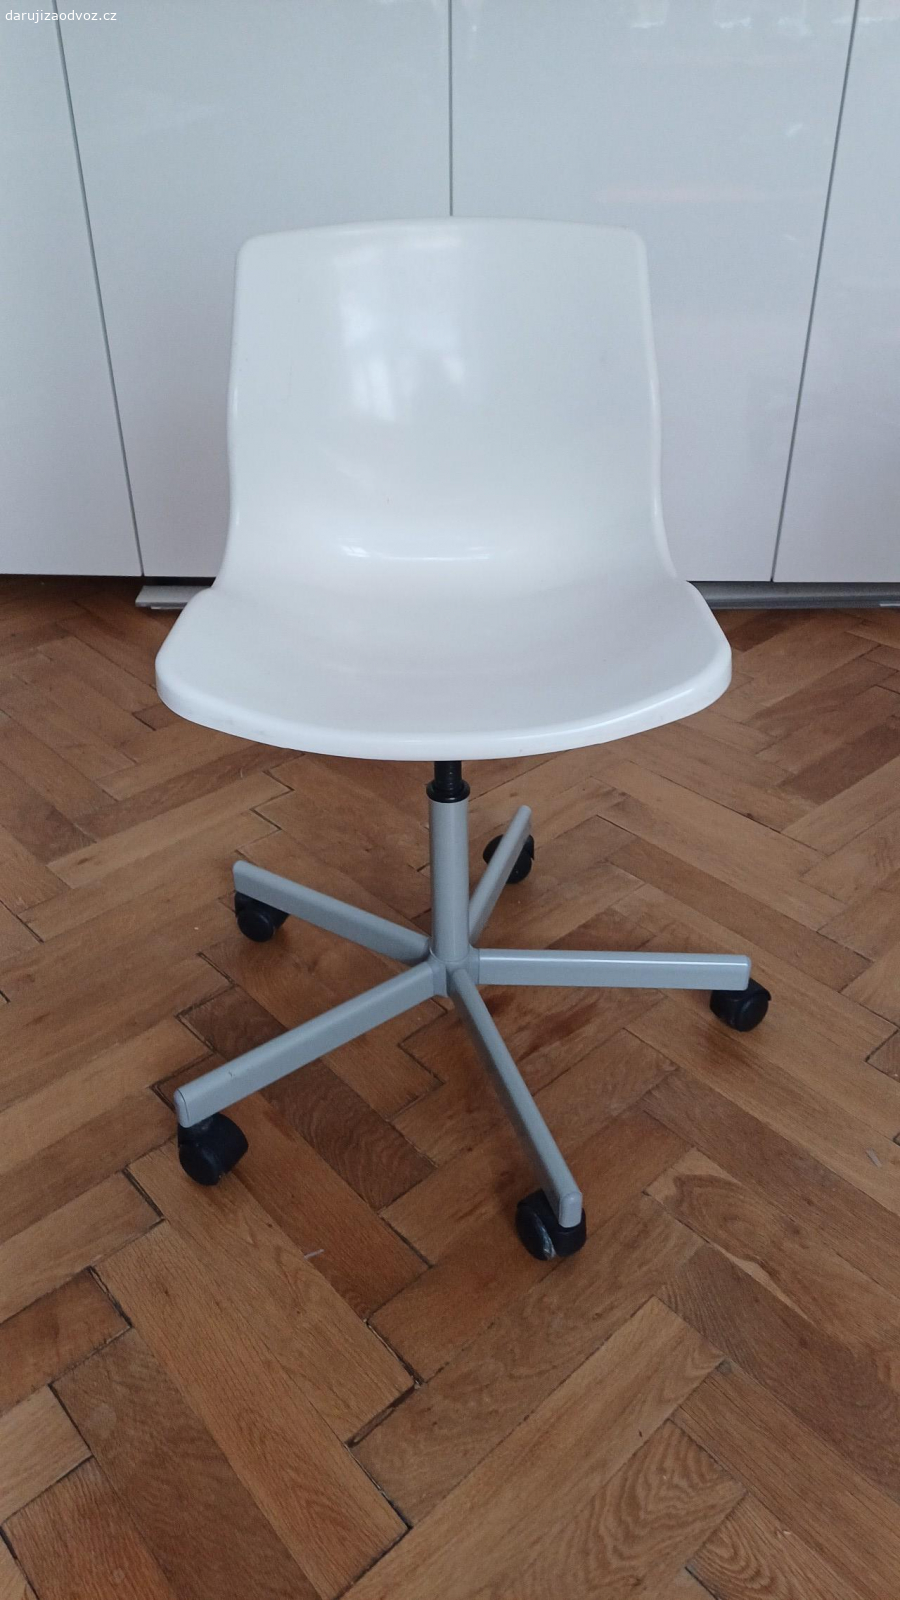 Daruji otočné židle IKEA. Otočné židle s plastovým sedákem IKEA. K dispozici 2 kusy, možný i odběr po jednom.